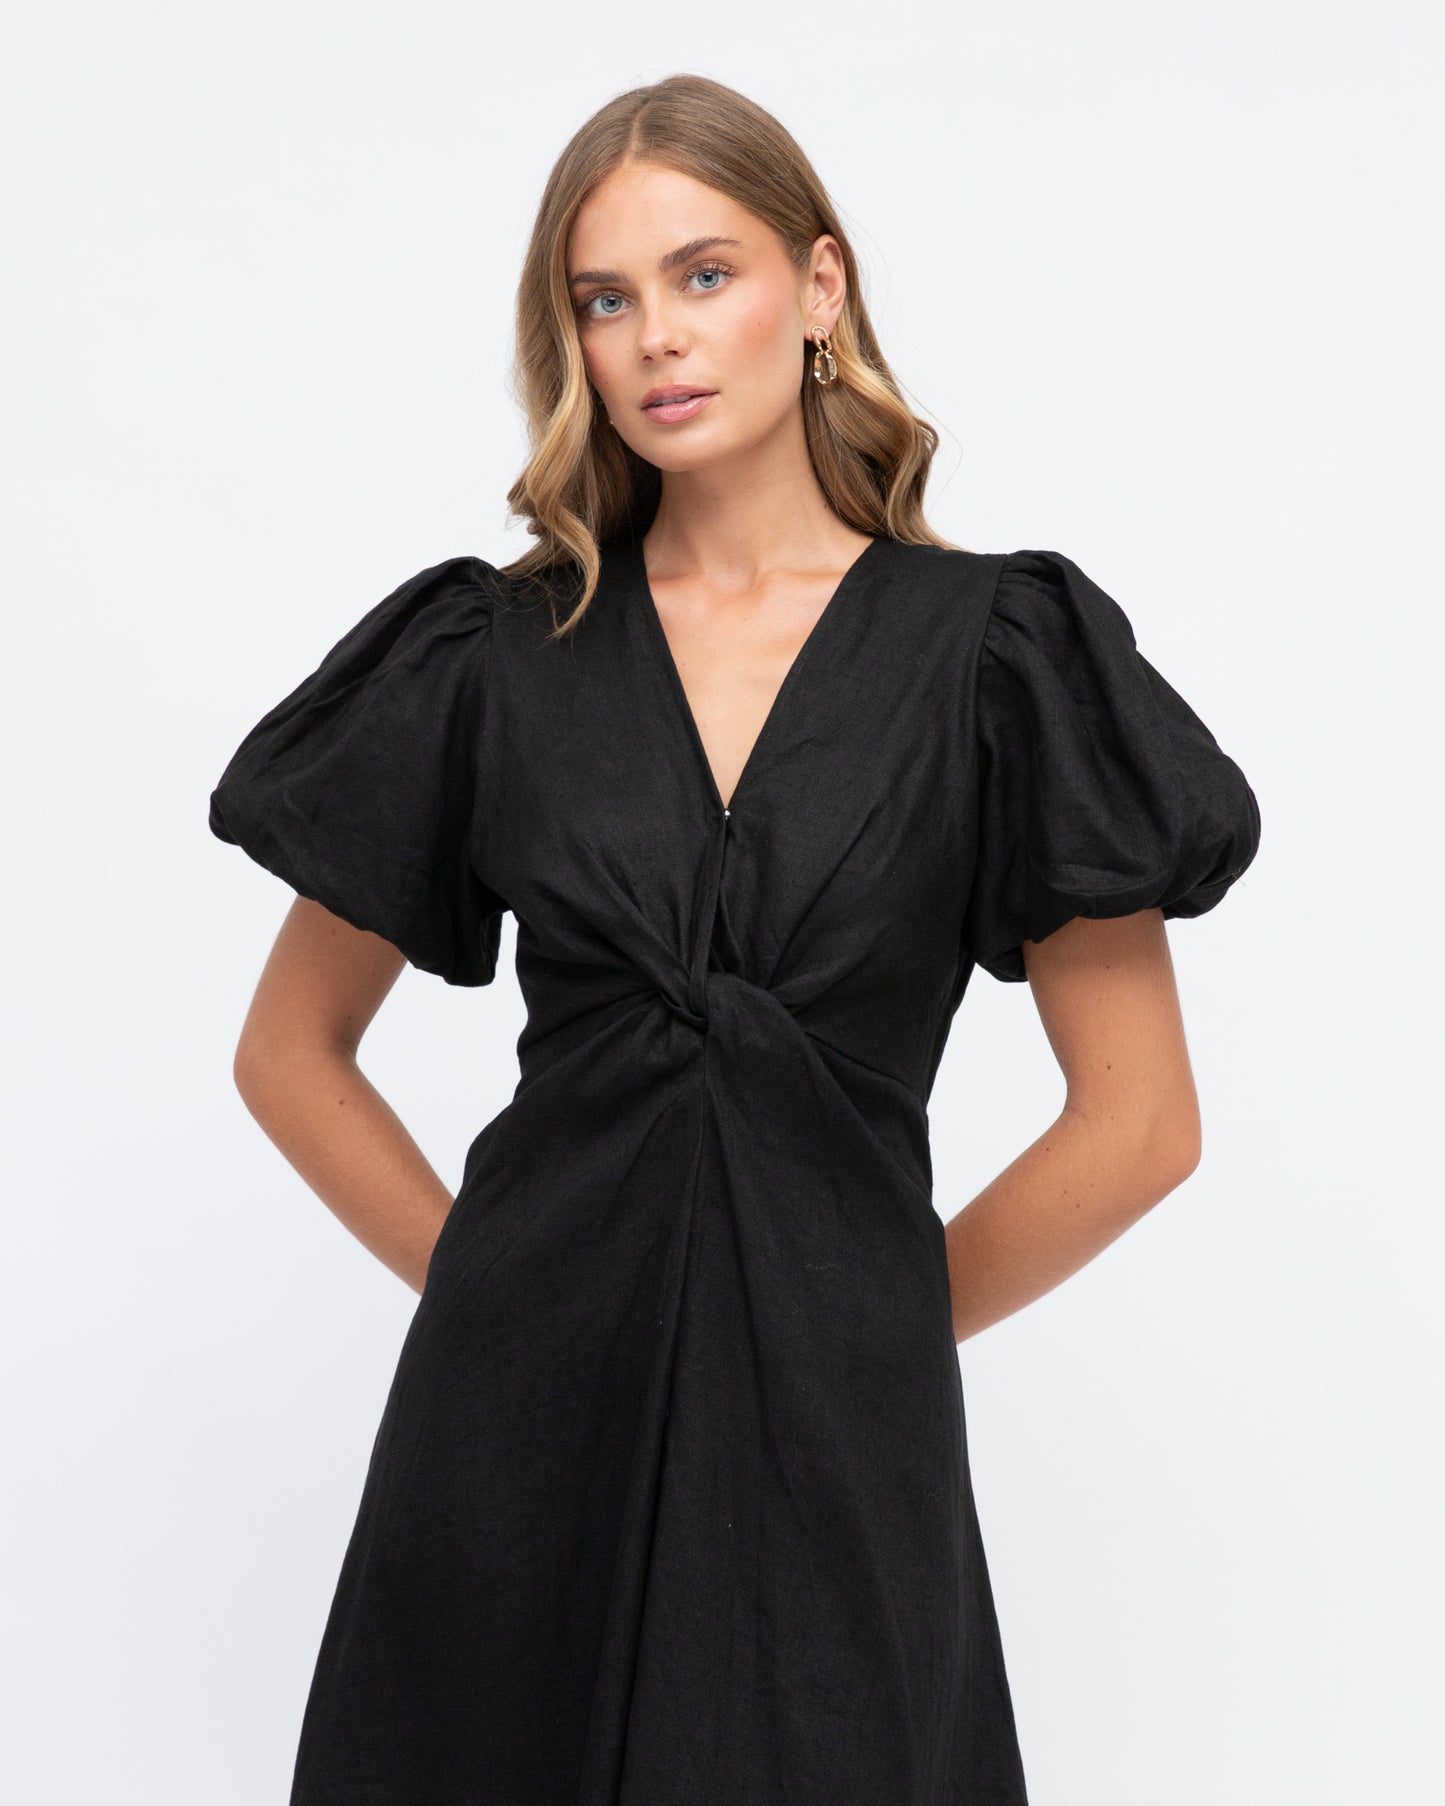 Lourell 100% Linen Maxi Dress - Black